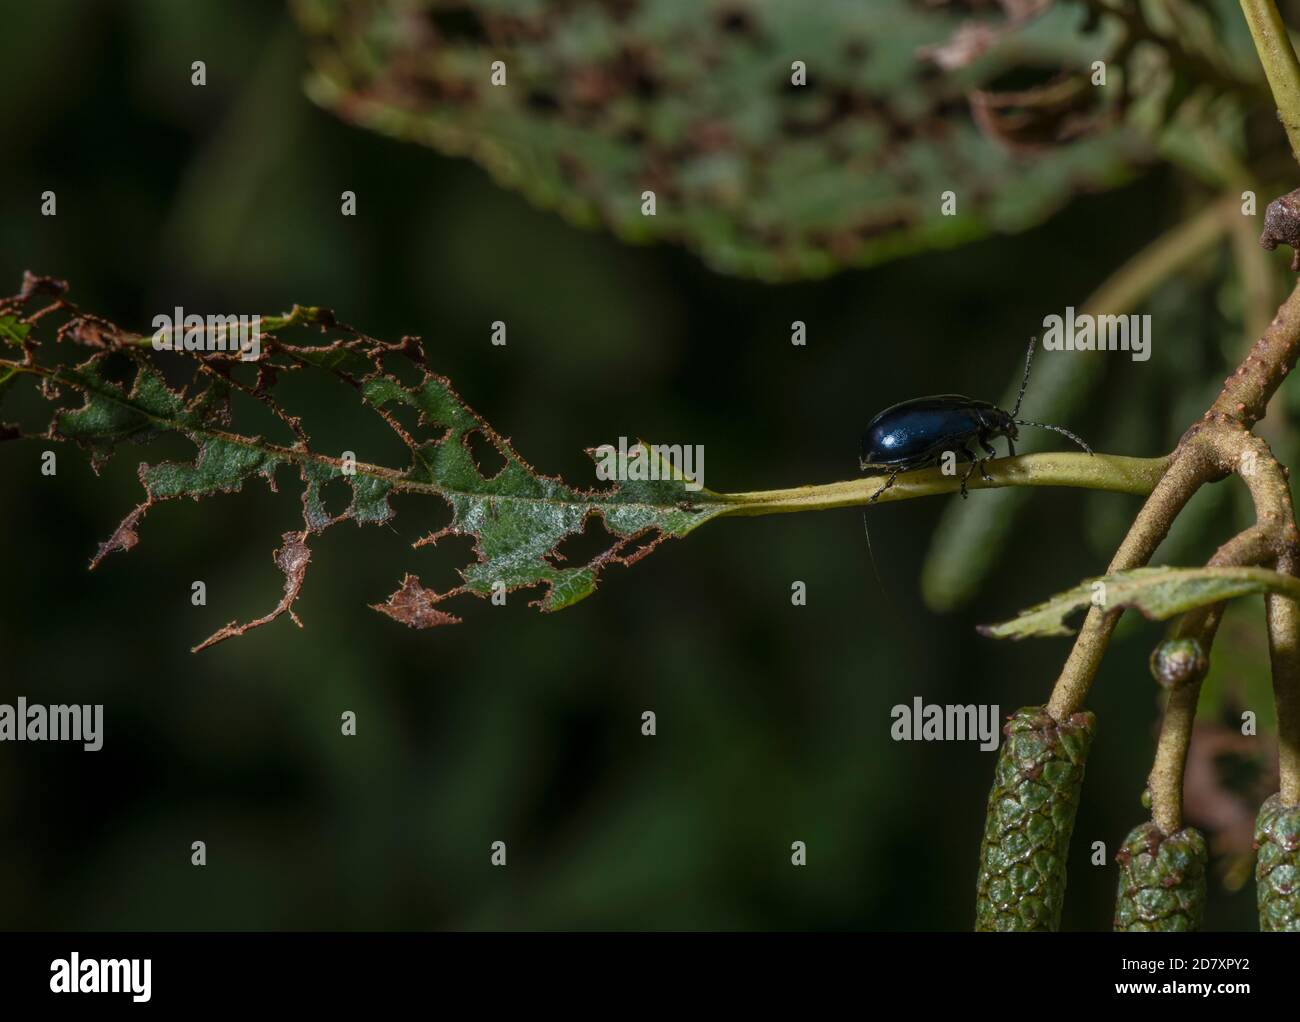 Alder leaf beetle, Agelastica alni,  on the leaves of Alder, Alnus glutinosa. Stock Photo